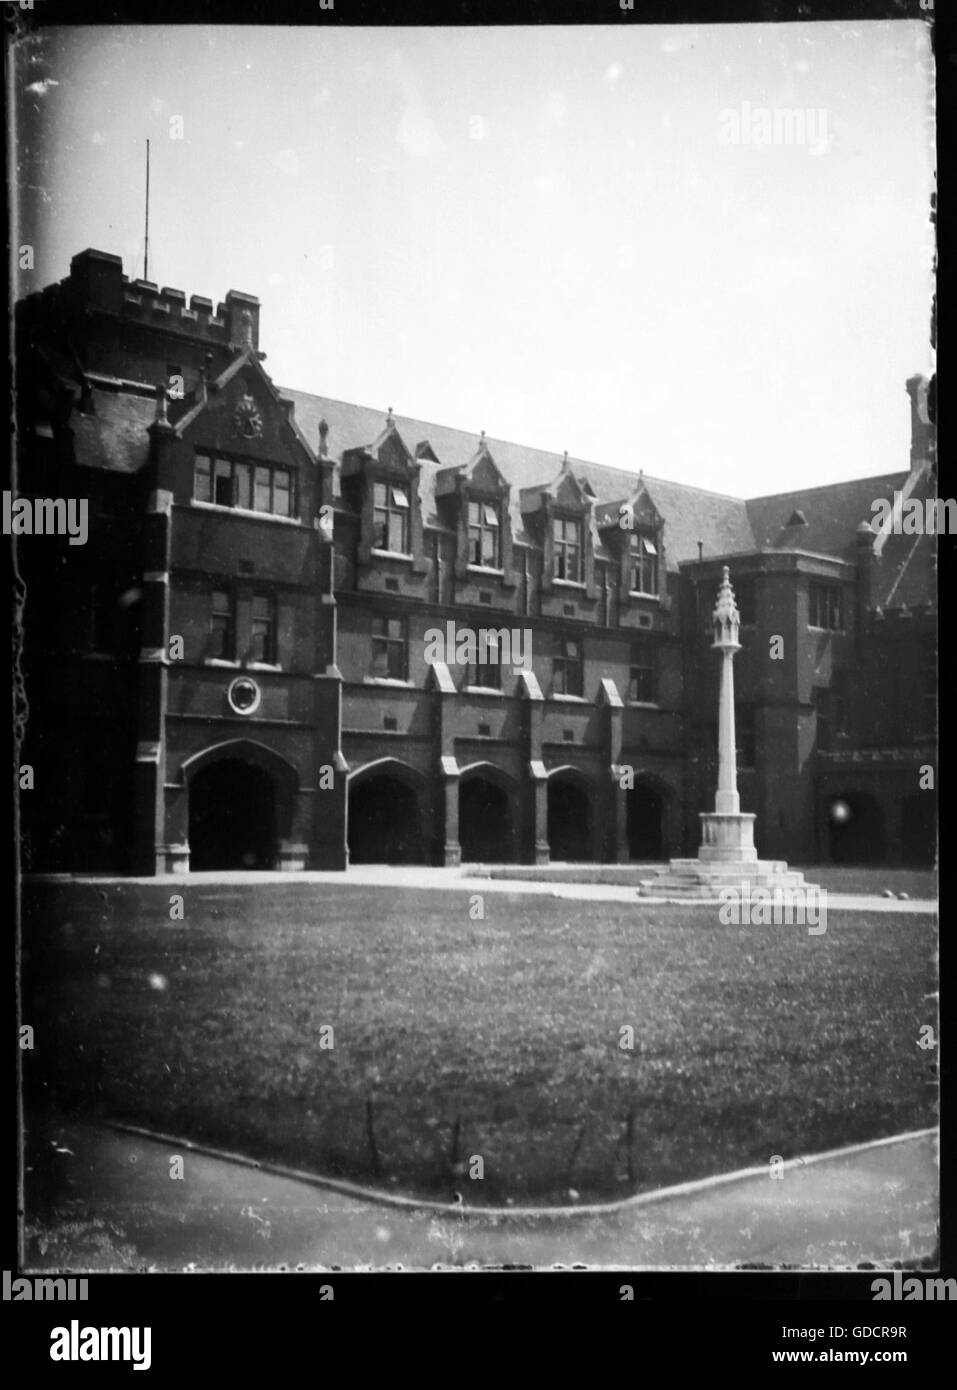 Bâtiment principal de l'école l'école Bancroft, Woodford, Essex. Vers 1930. À partir de l'original numérisé négatif sur verre. Banque D'Images